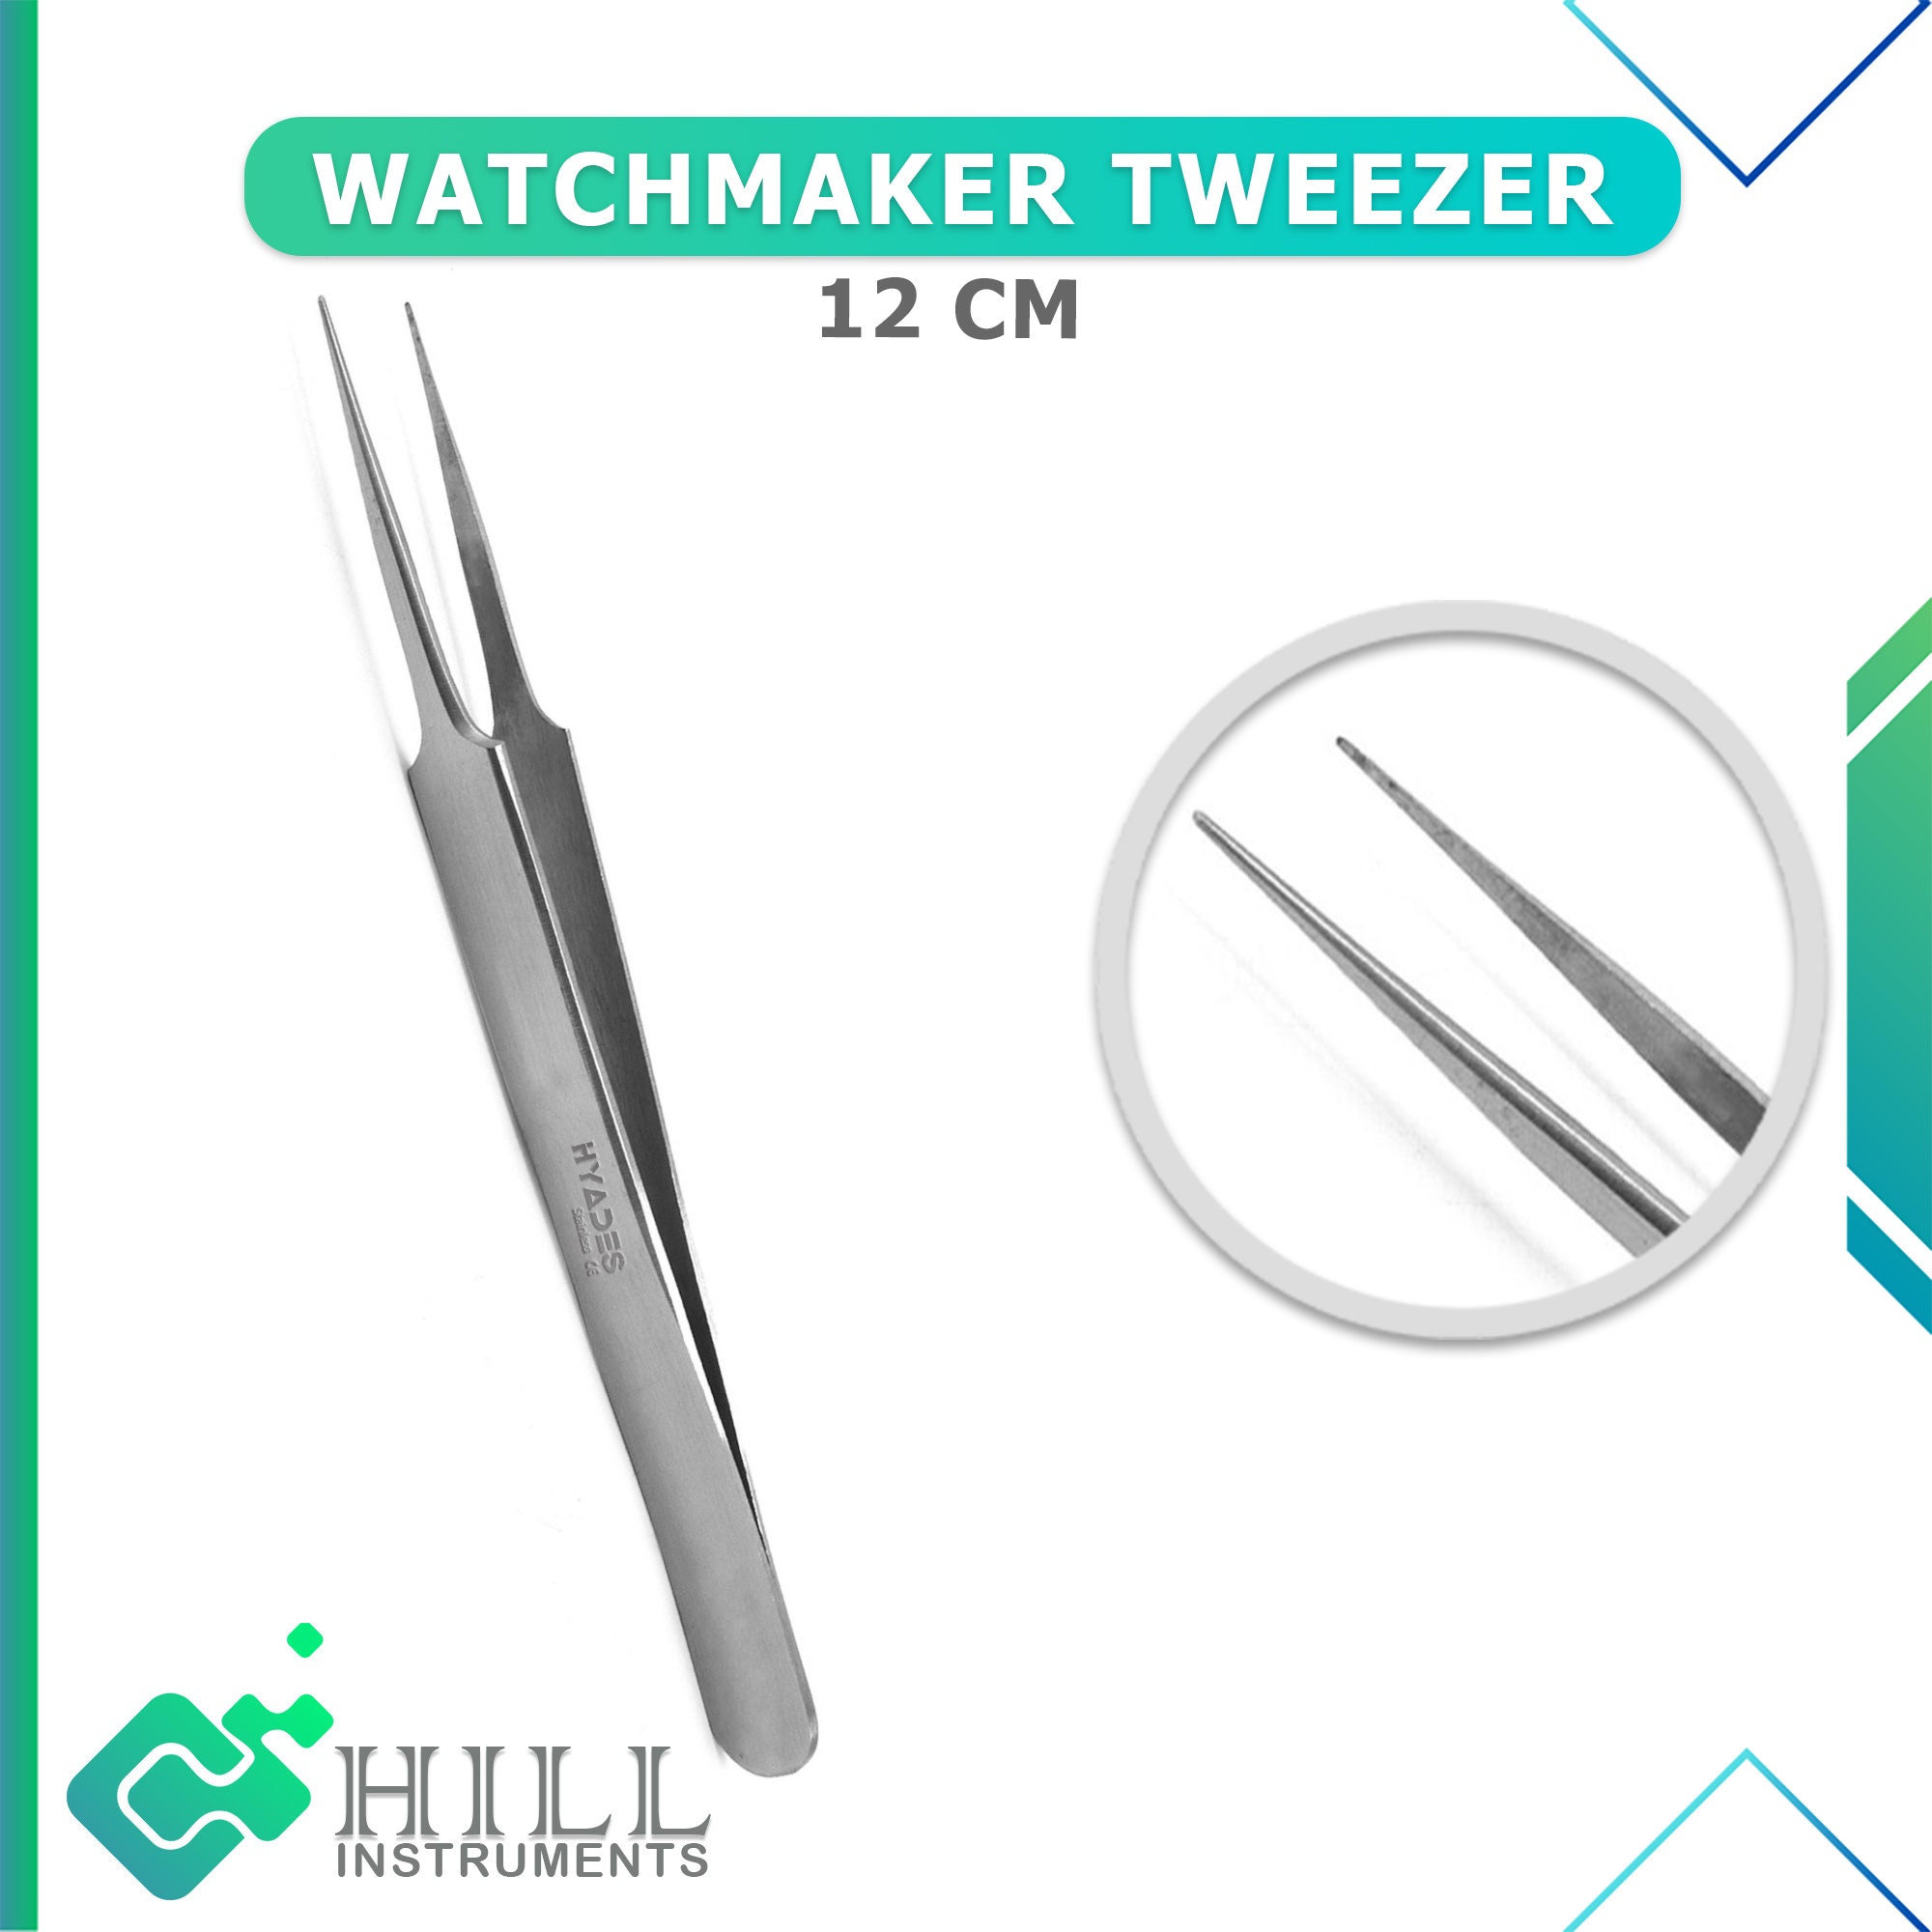 Tweezers for Watchmakers and Precision Work Watch making Tweezers  instruments CE